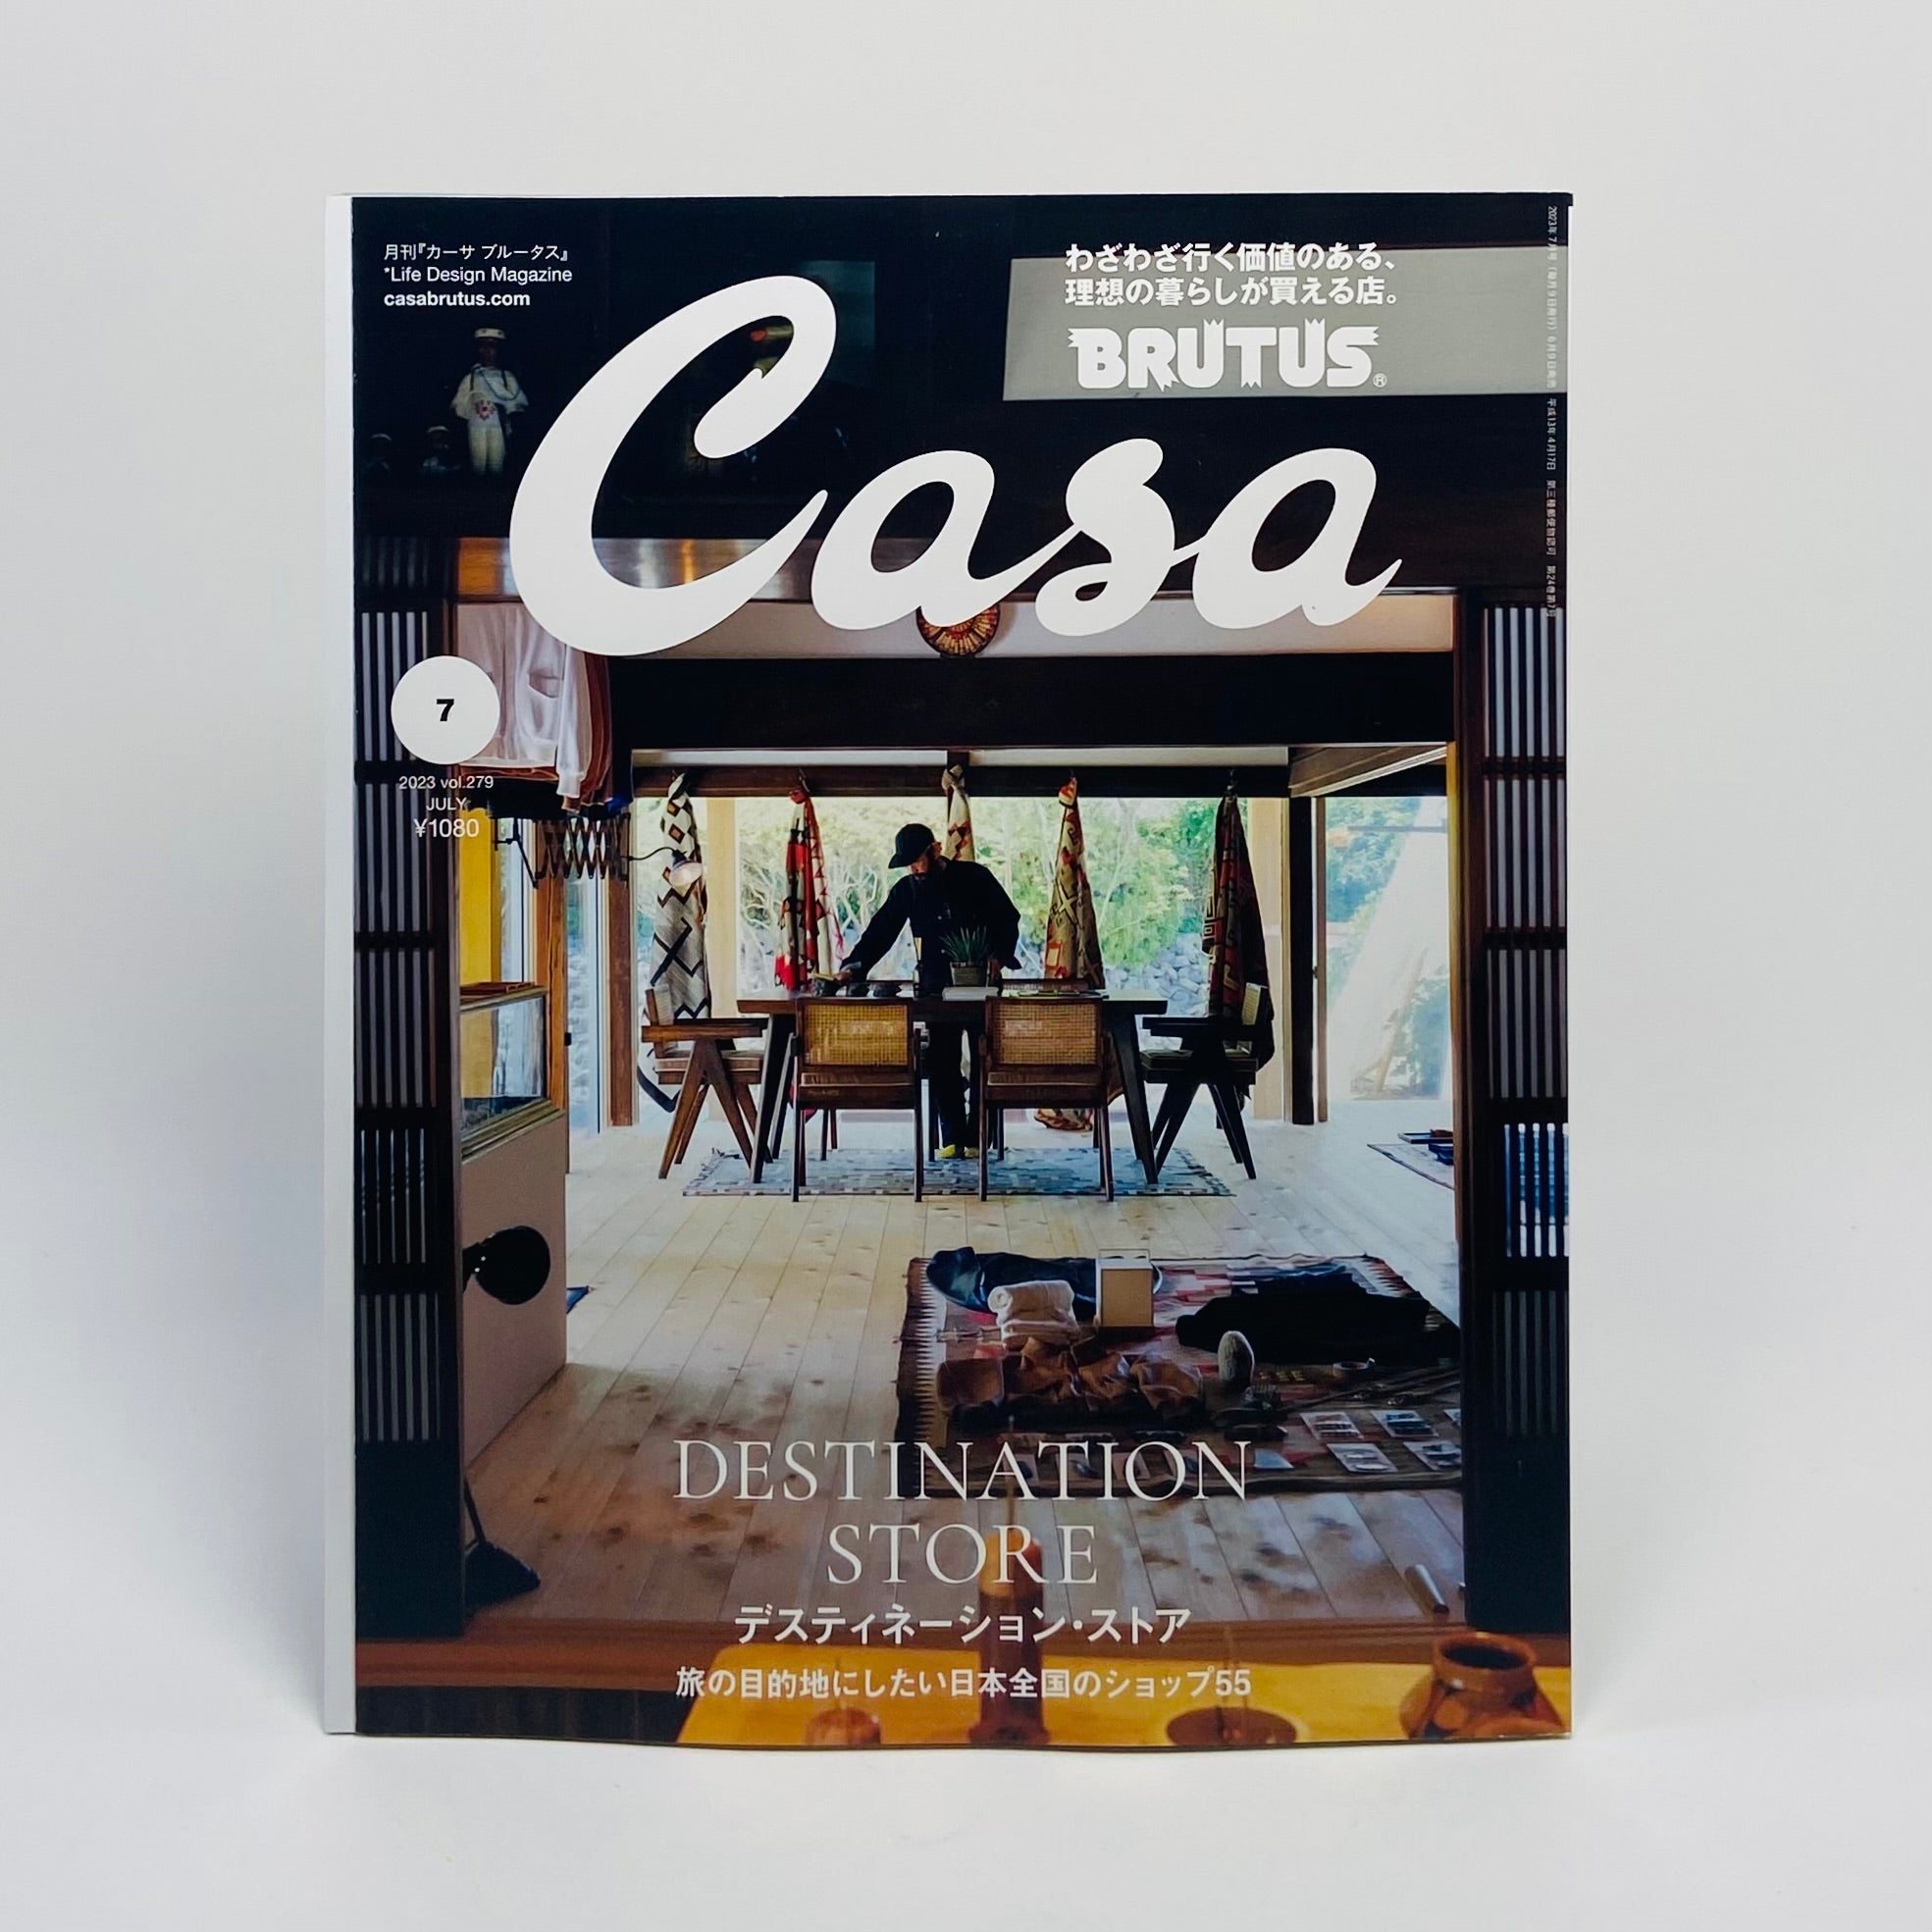 Casa Brutus Magazine, A Look into Nigo's Home